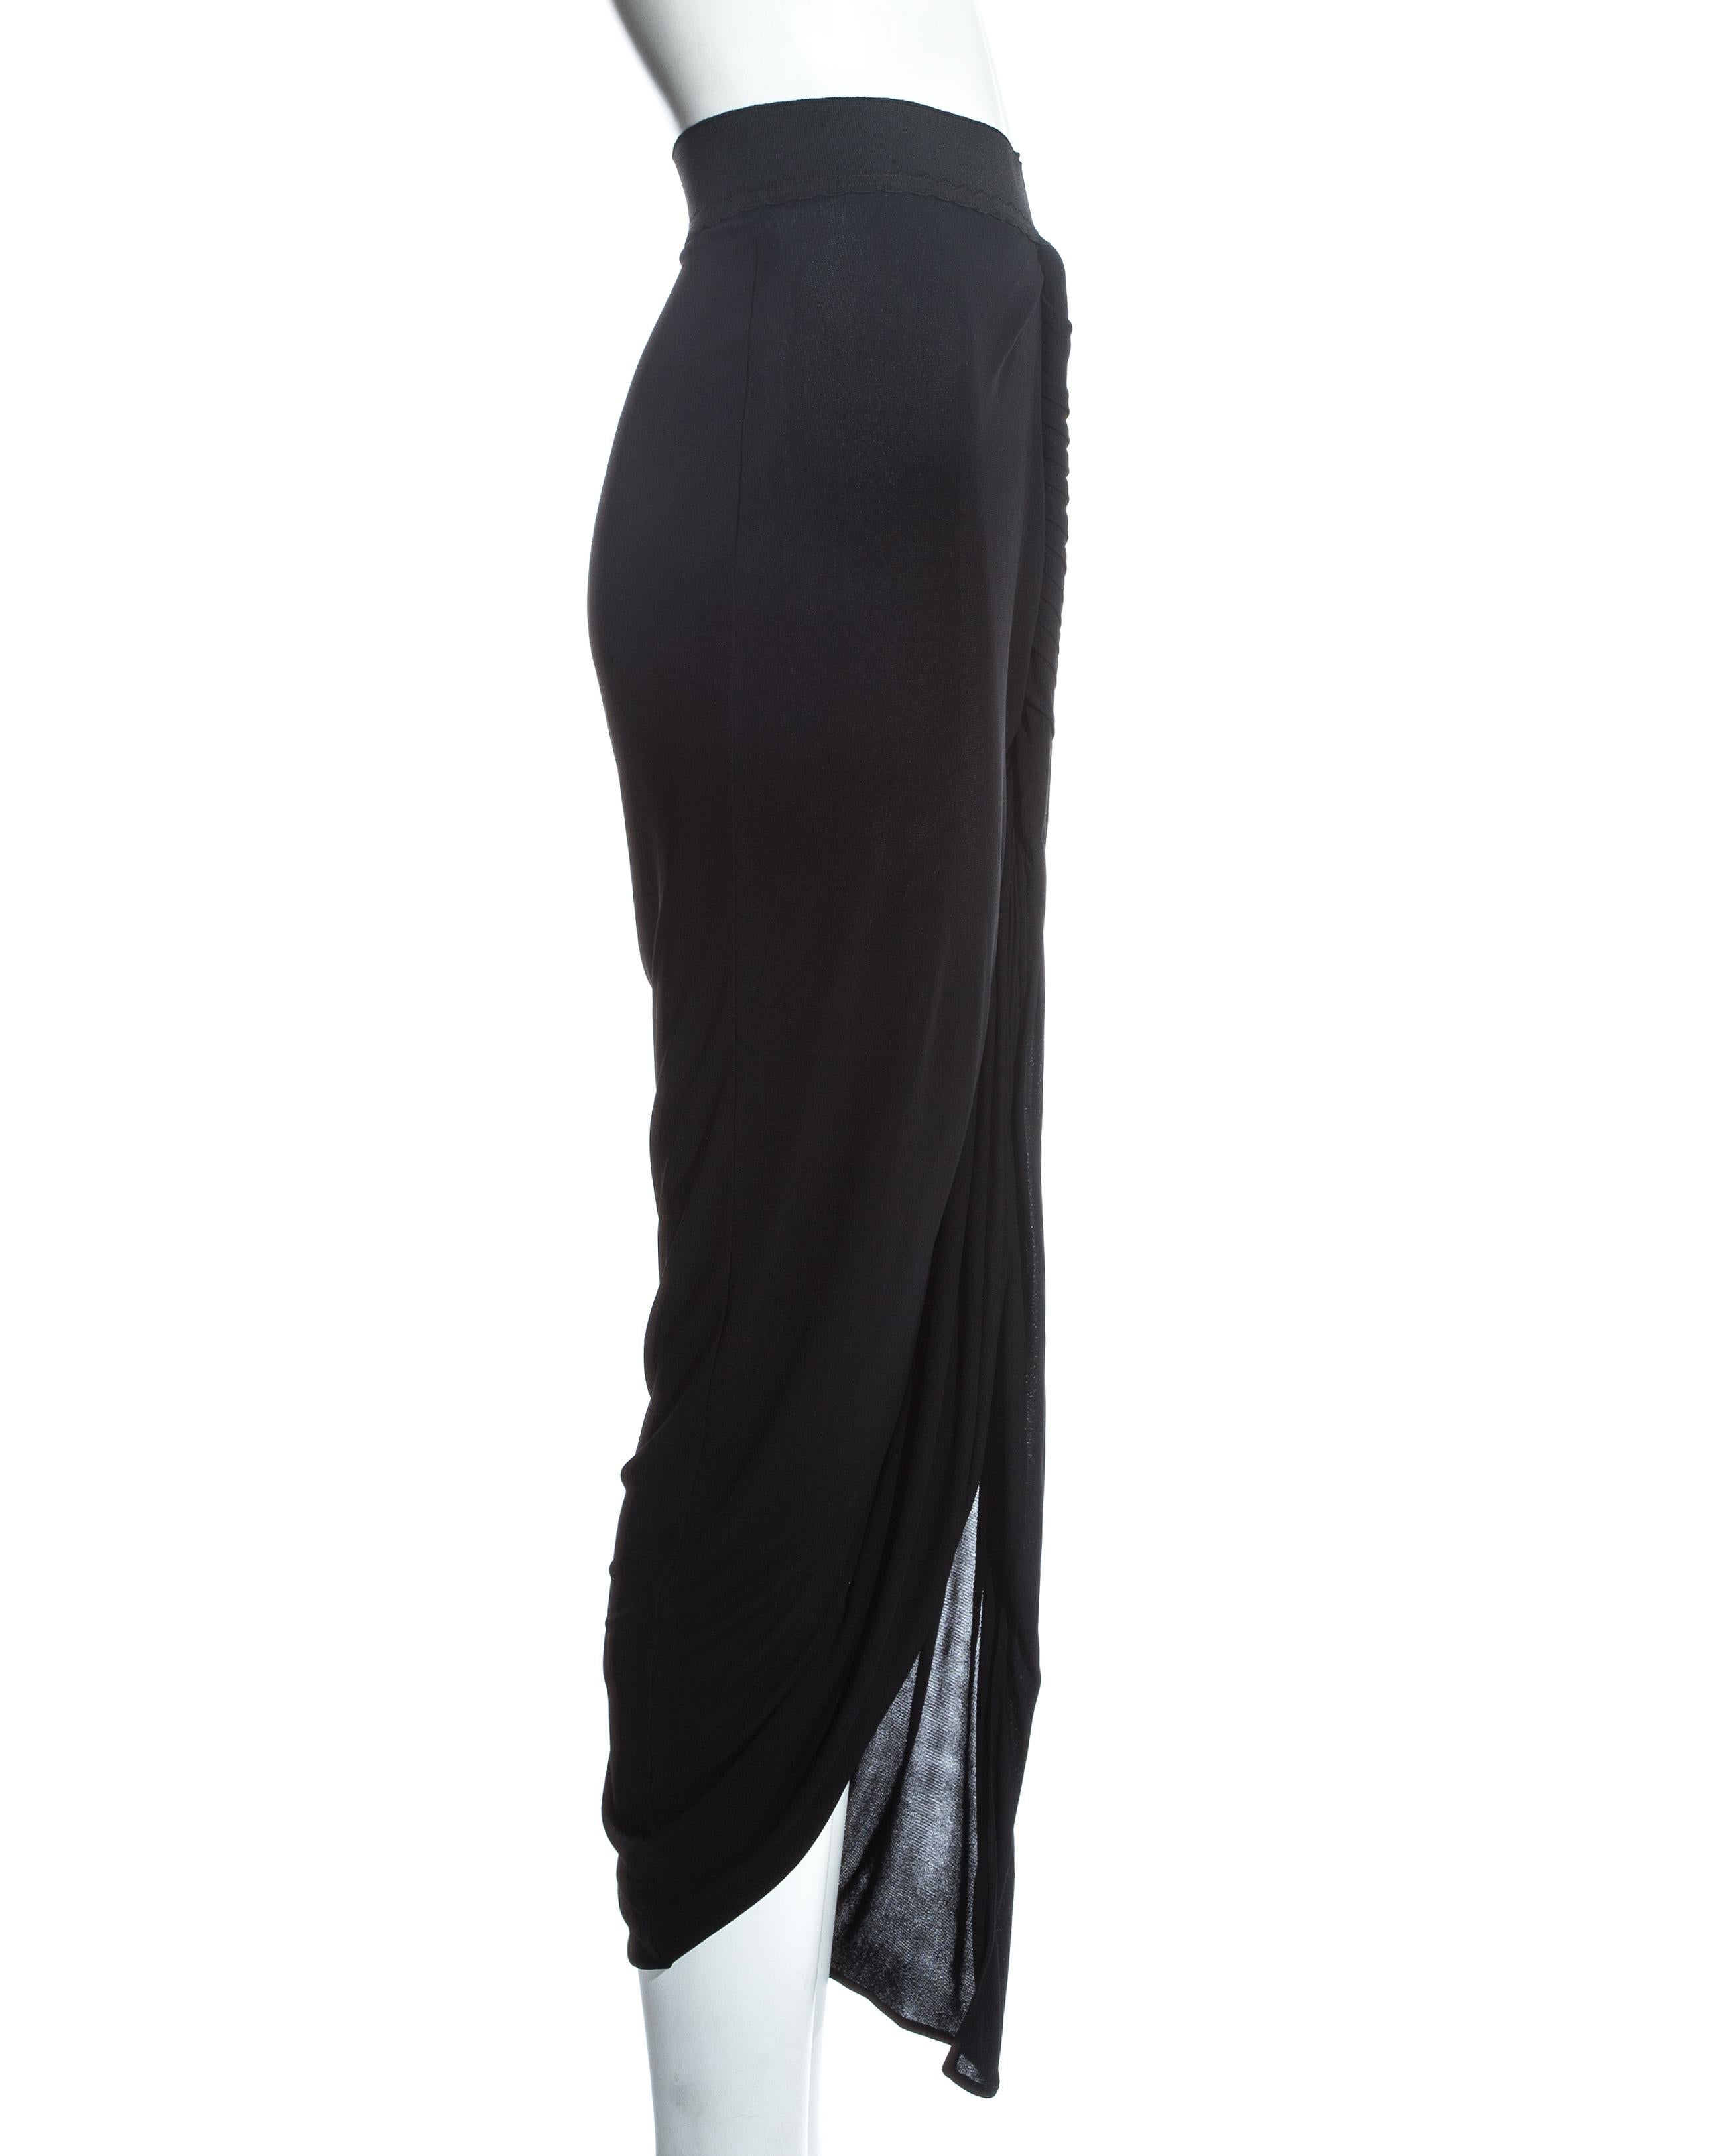 Jean Paul Gaultier black jersey draped evening skirt, ss 2009 2